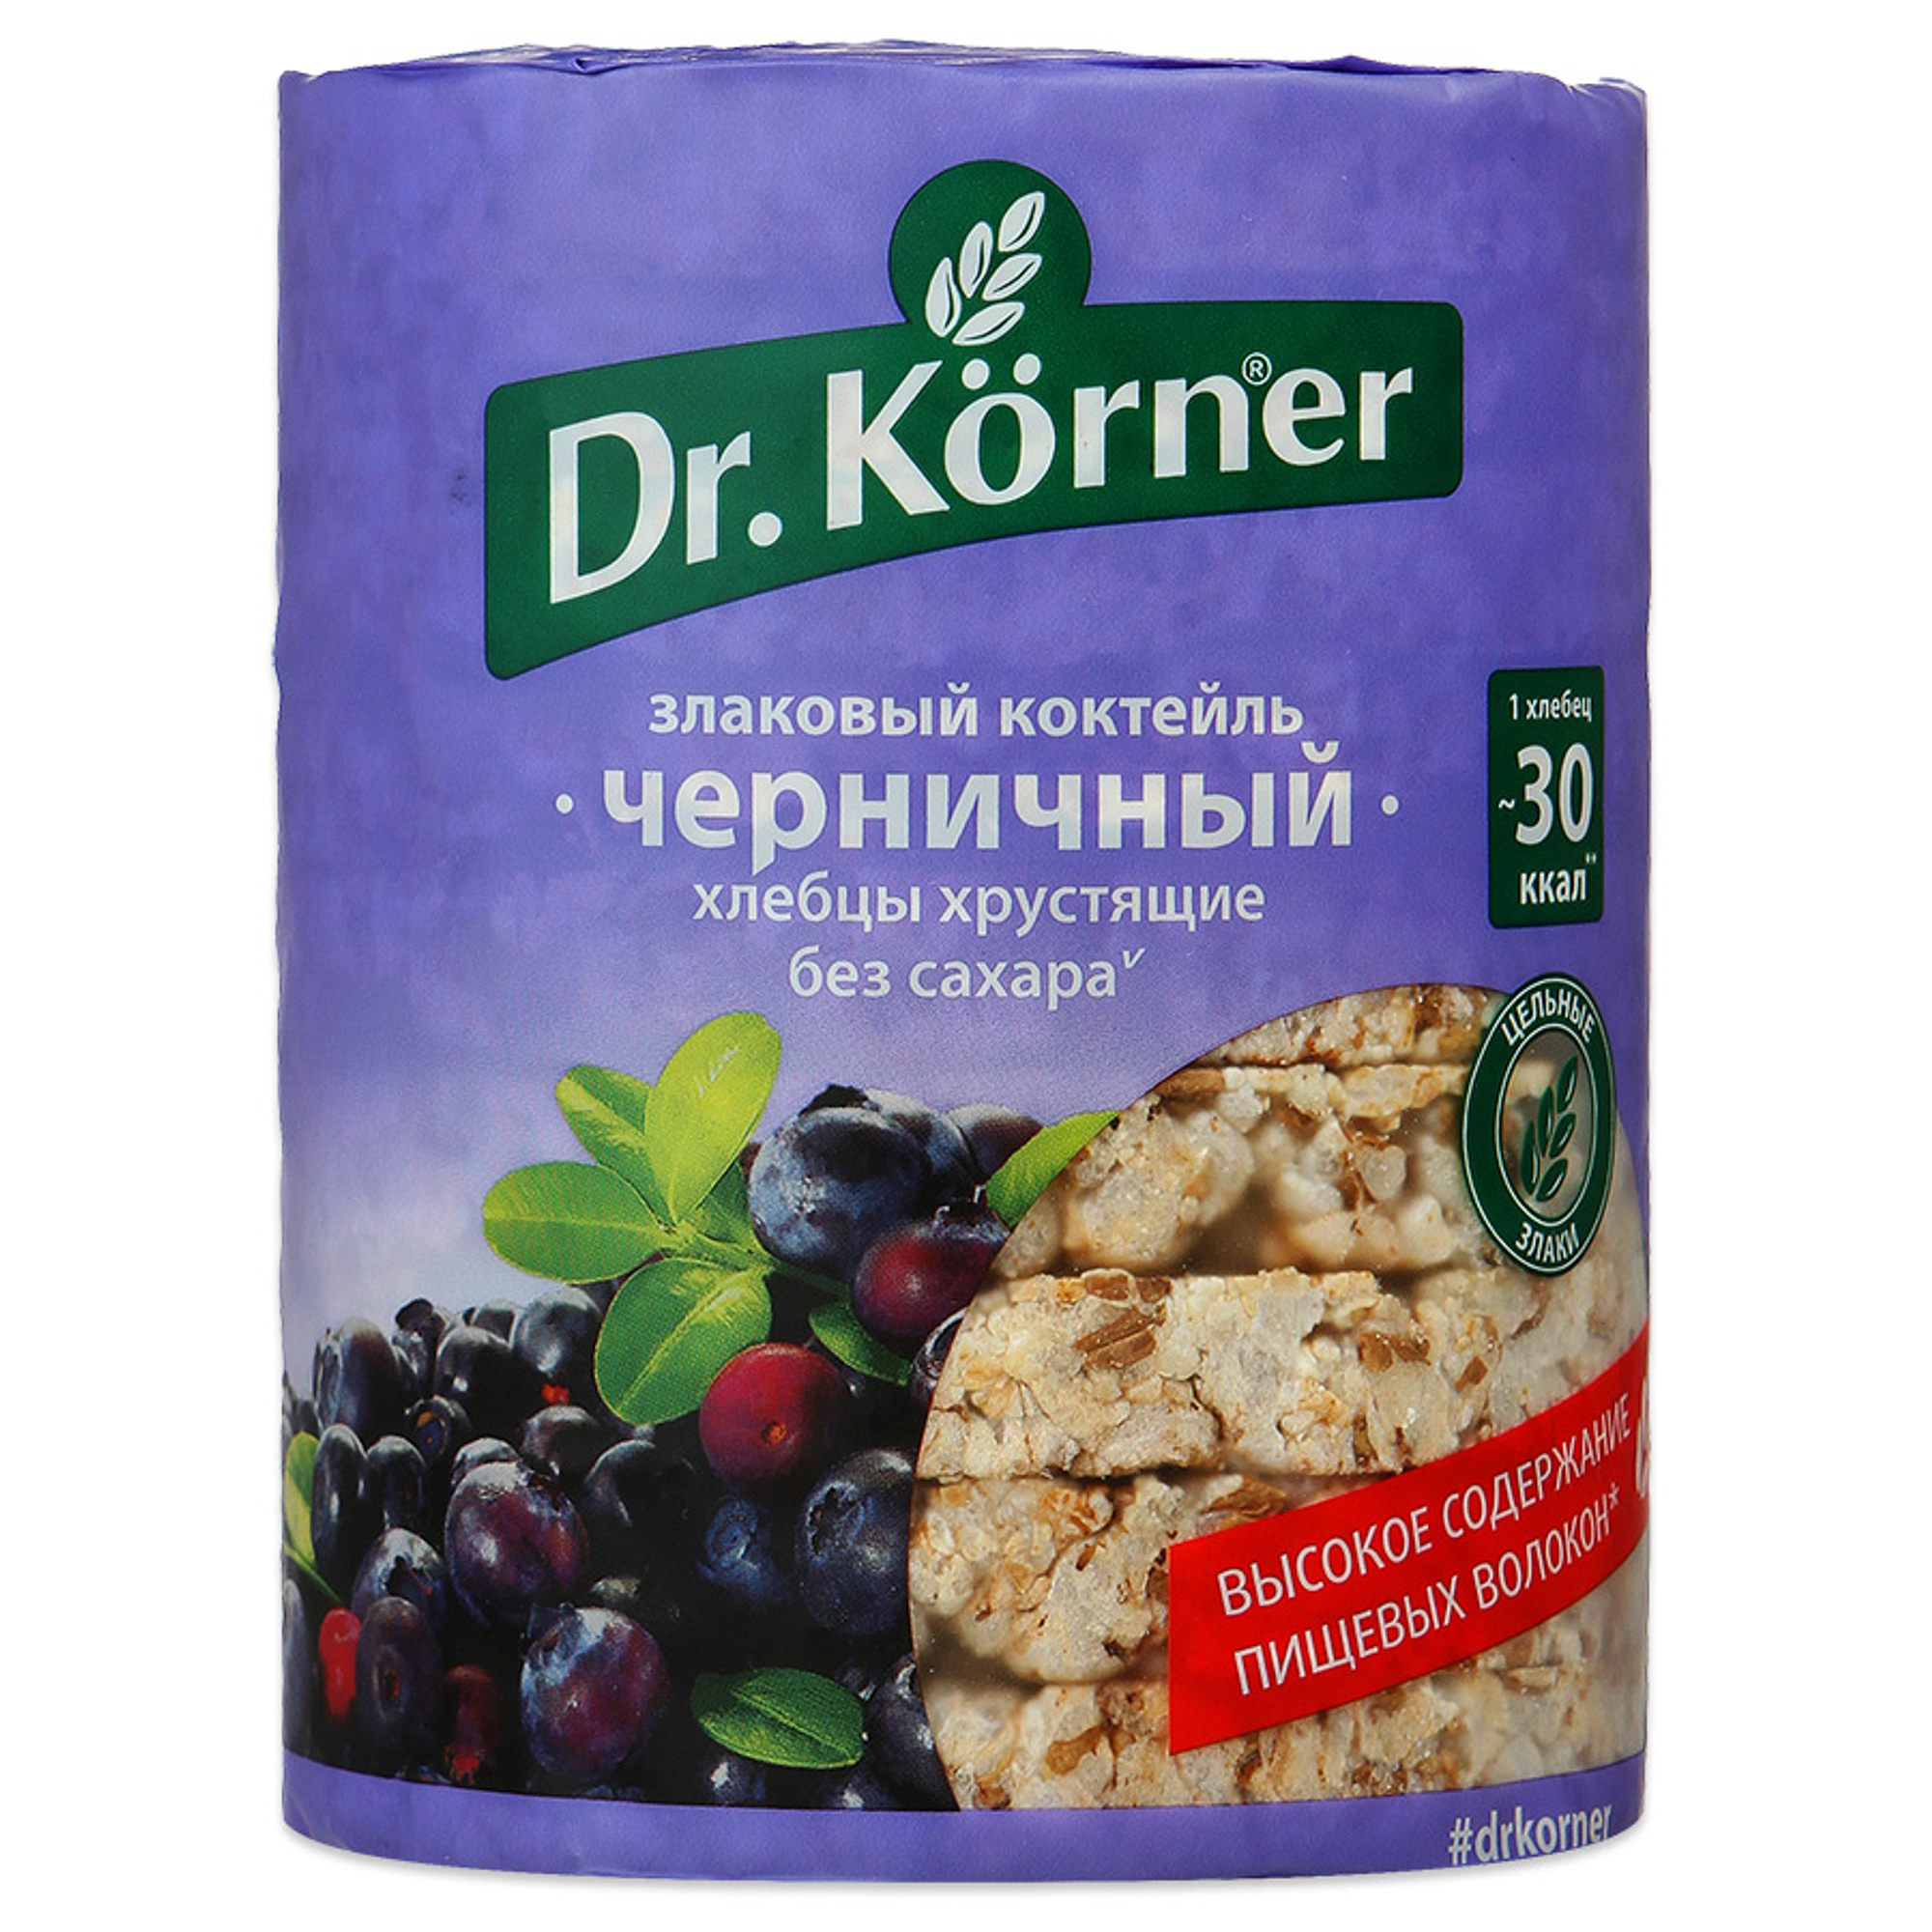 Хлебцы хрустящие Dr. Korner Злаковый коктейль черничный 100 г хлебцы щедрые бородинские тонкие 170 гр